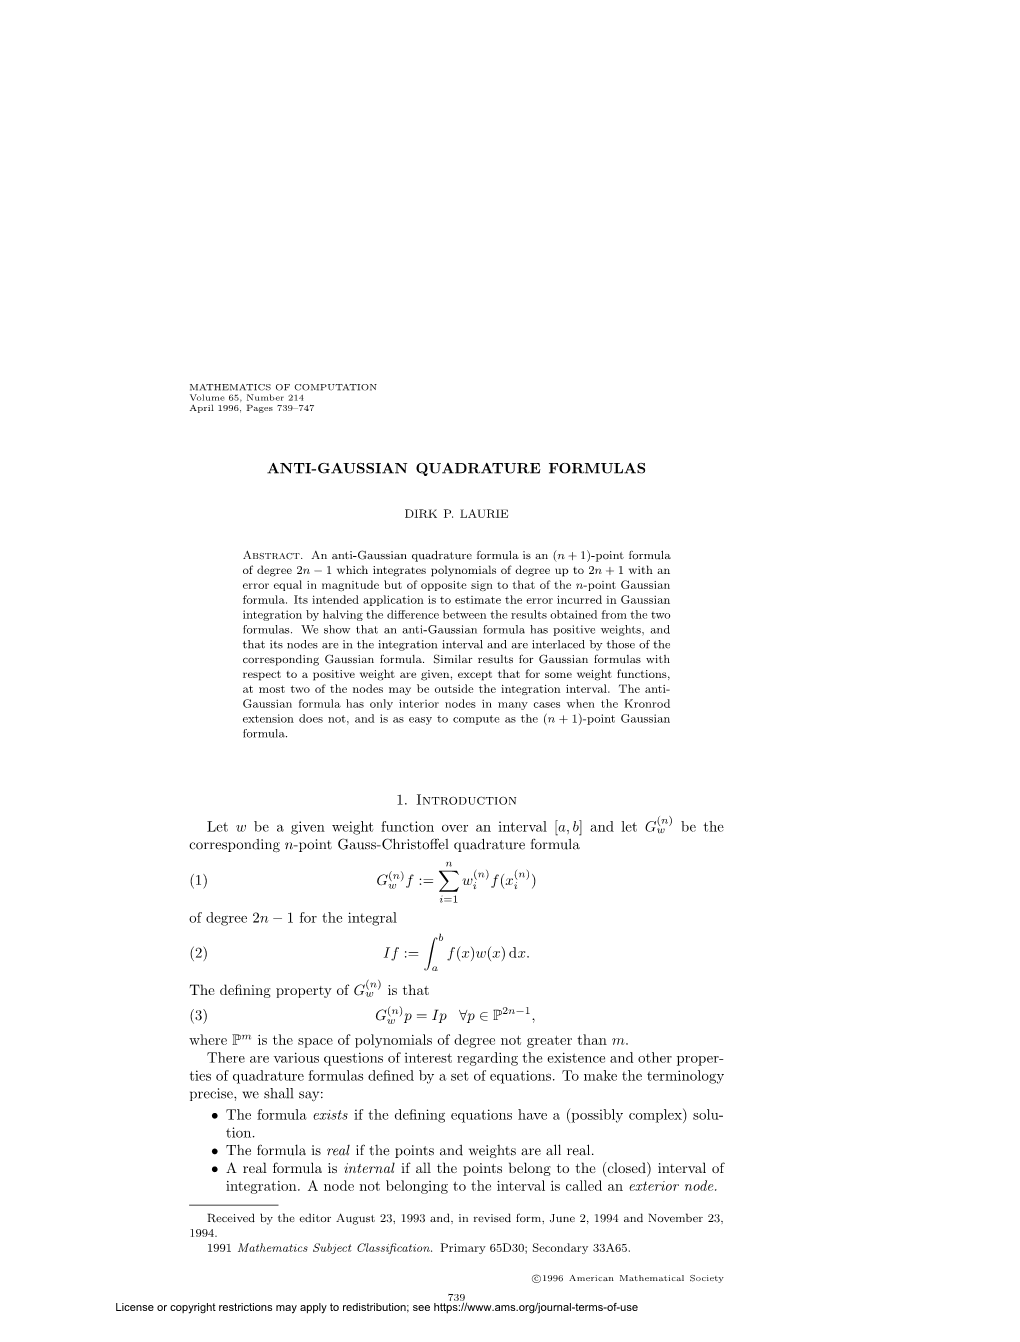 Anti-Gaussian Quadrature Formulas